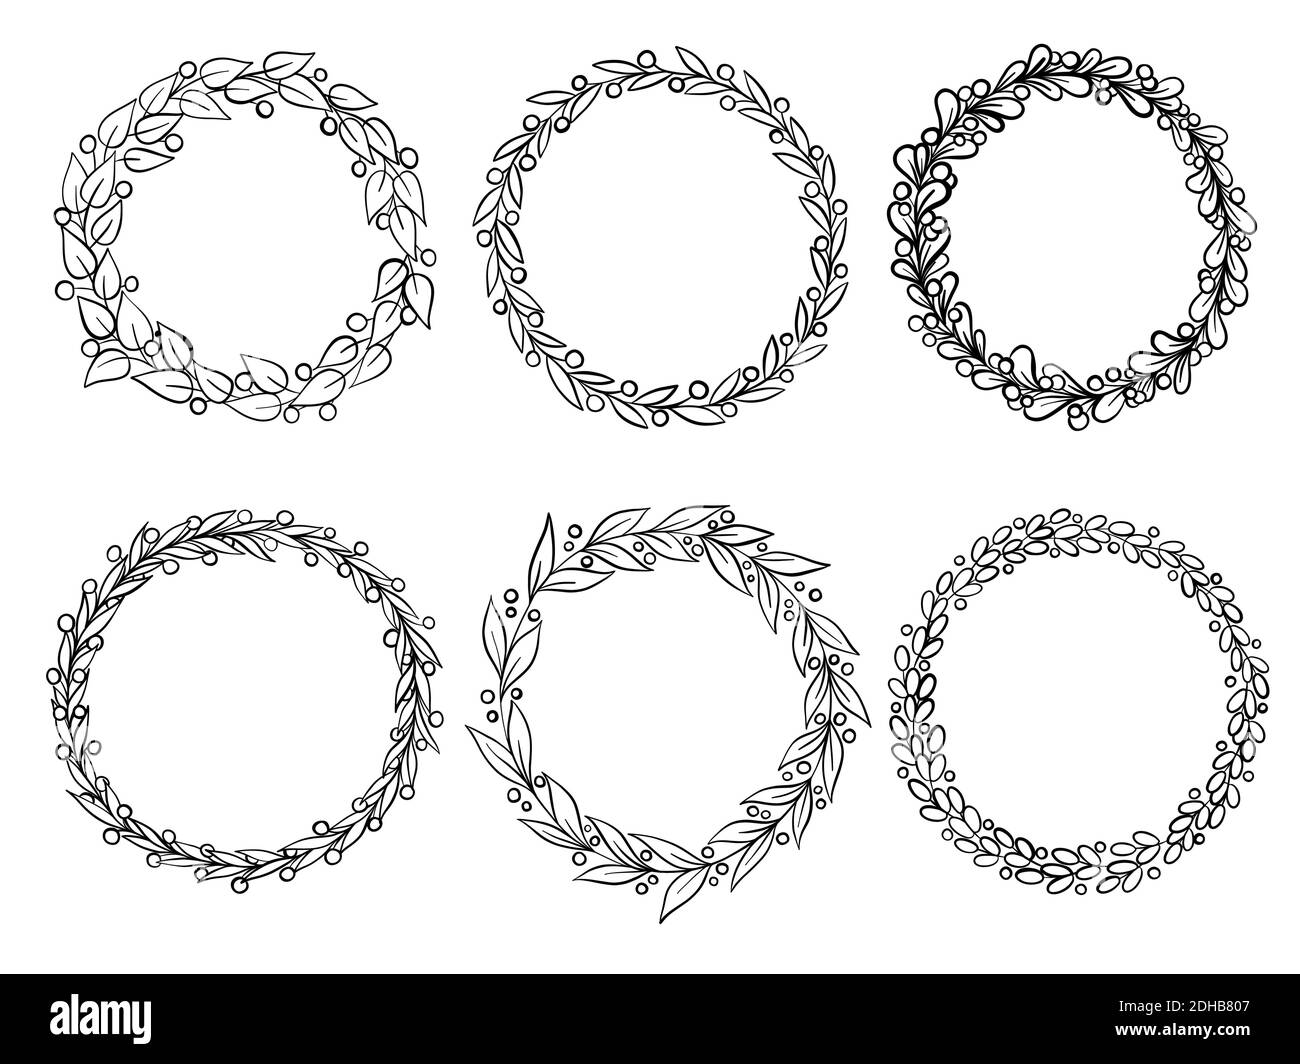 Collezione wreath vettoriale disegnata a mano. Cornice circolare floreale elemento di design per inviti, biglietti d'auguri, poster, blog. Rami delicati Illustrazione Vettoriale